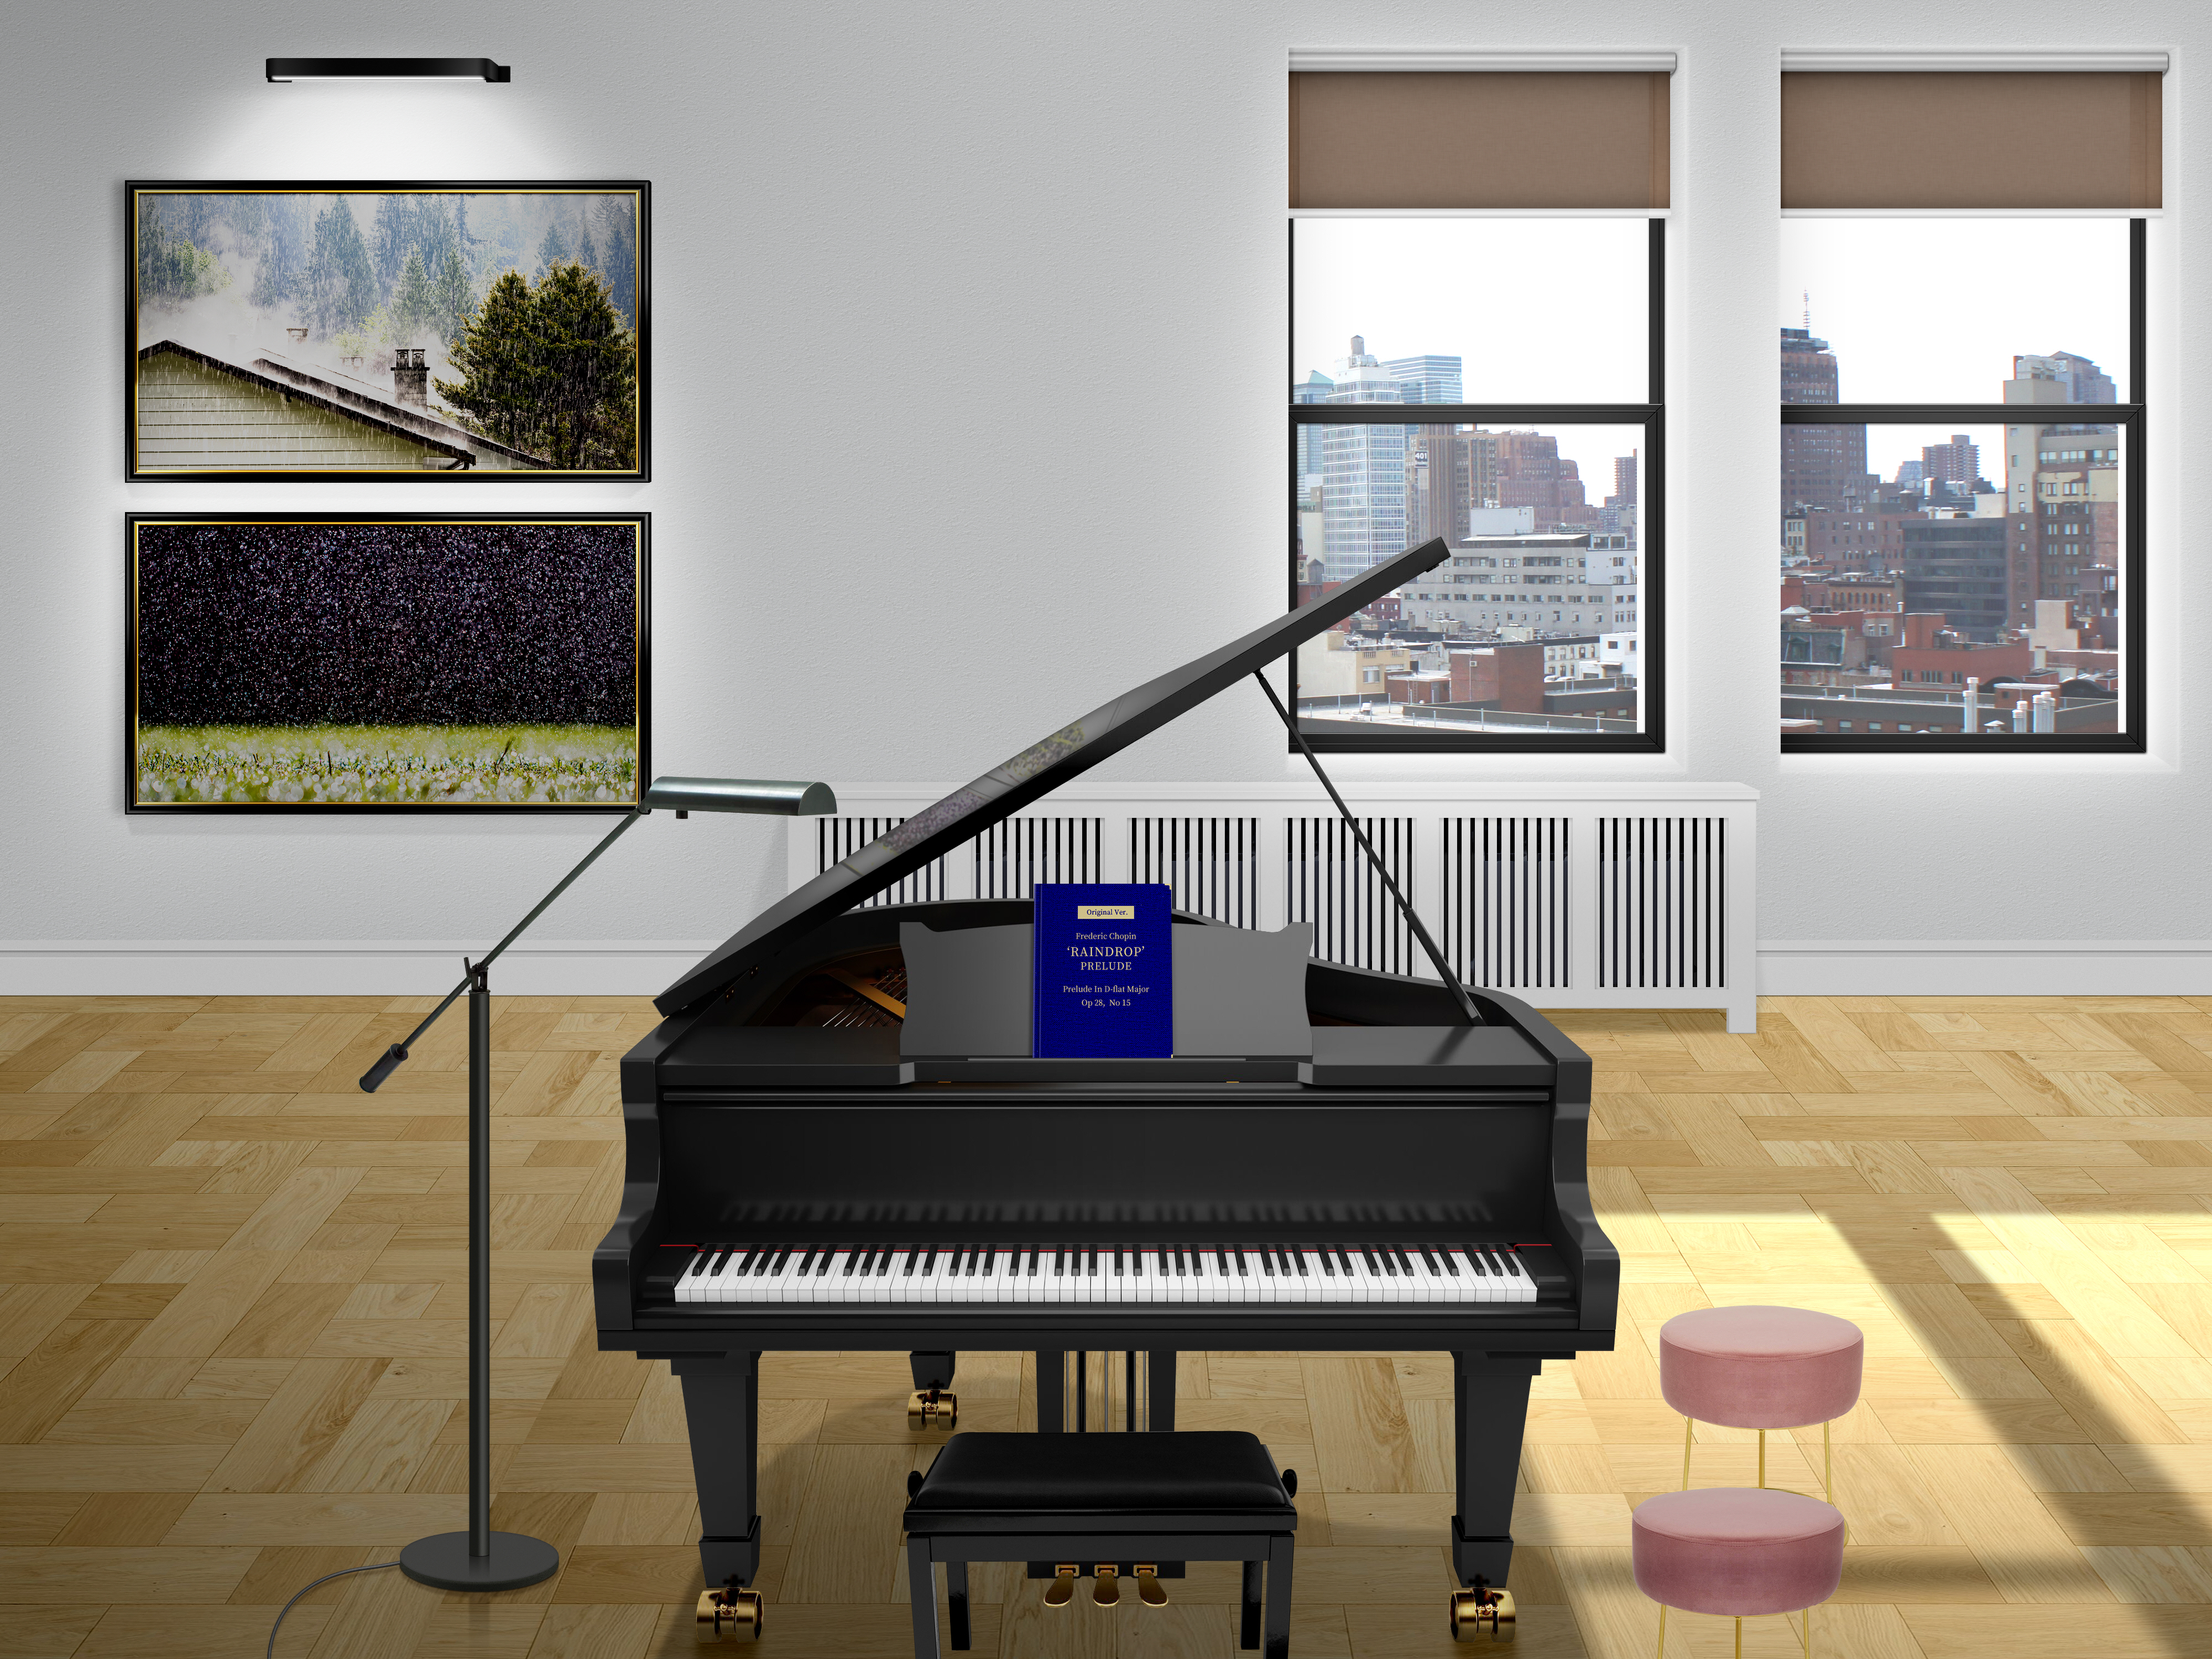 General 4000x3000 studio wall piano grand piano Fryderyk Chopin